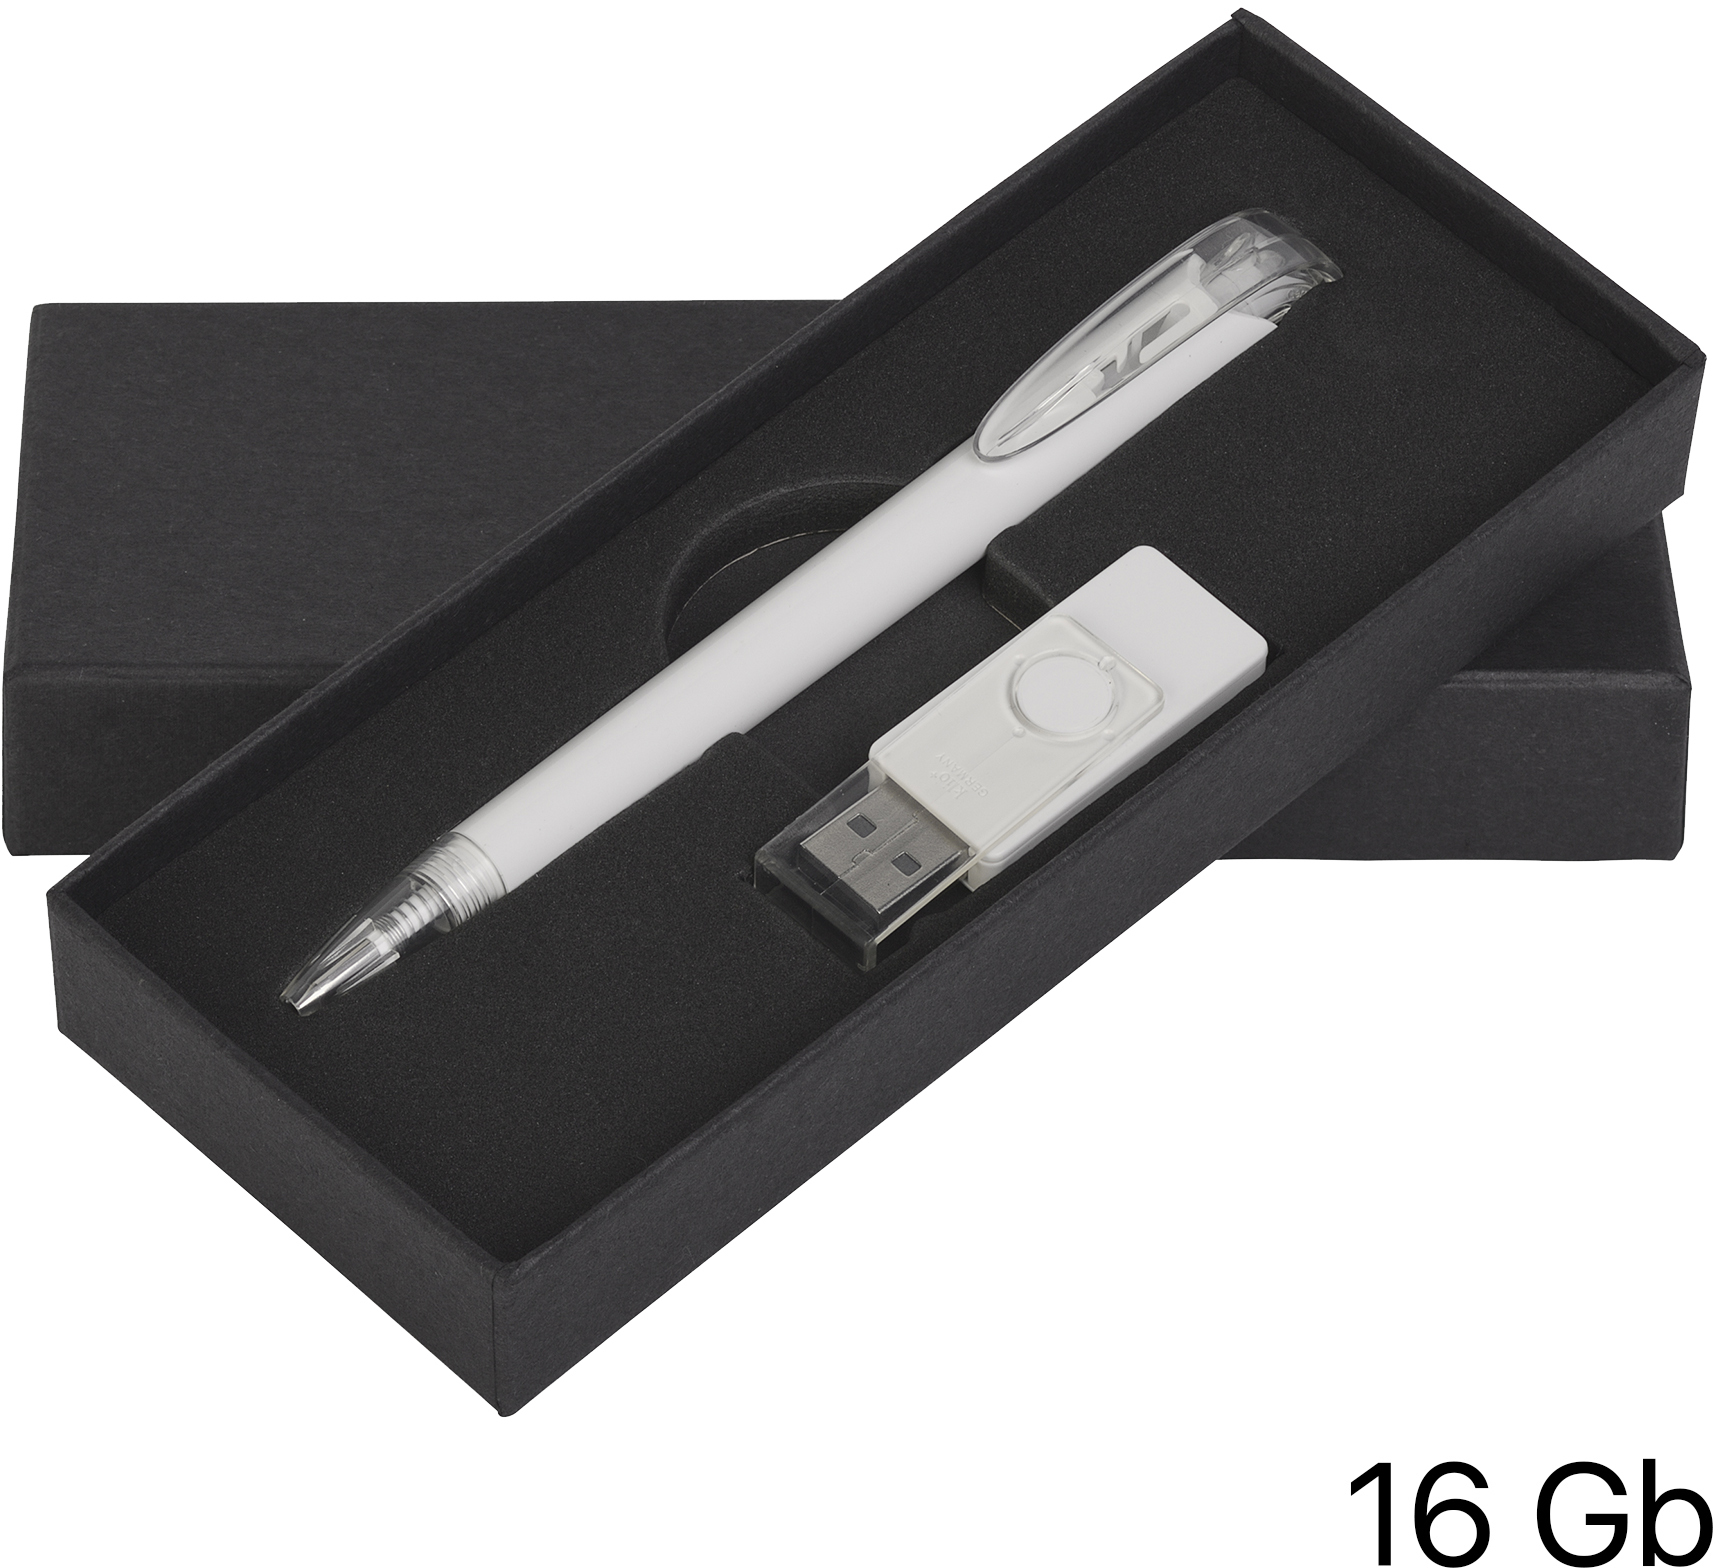 Артикул: E70120-1/1T/16Gb — Набор ручка + флеш-карта 16Гб в футляре